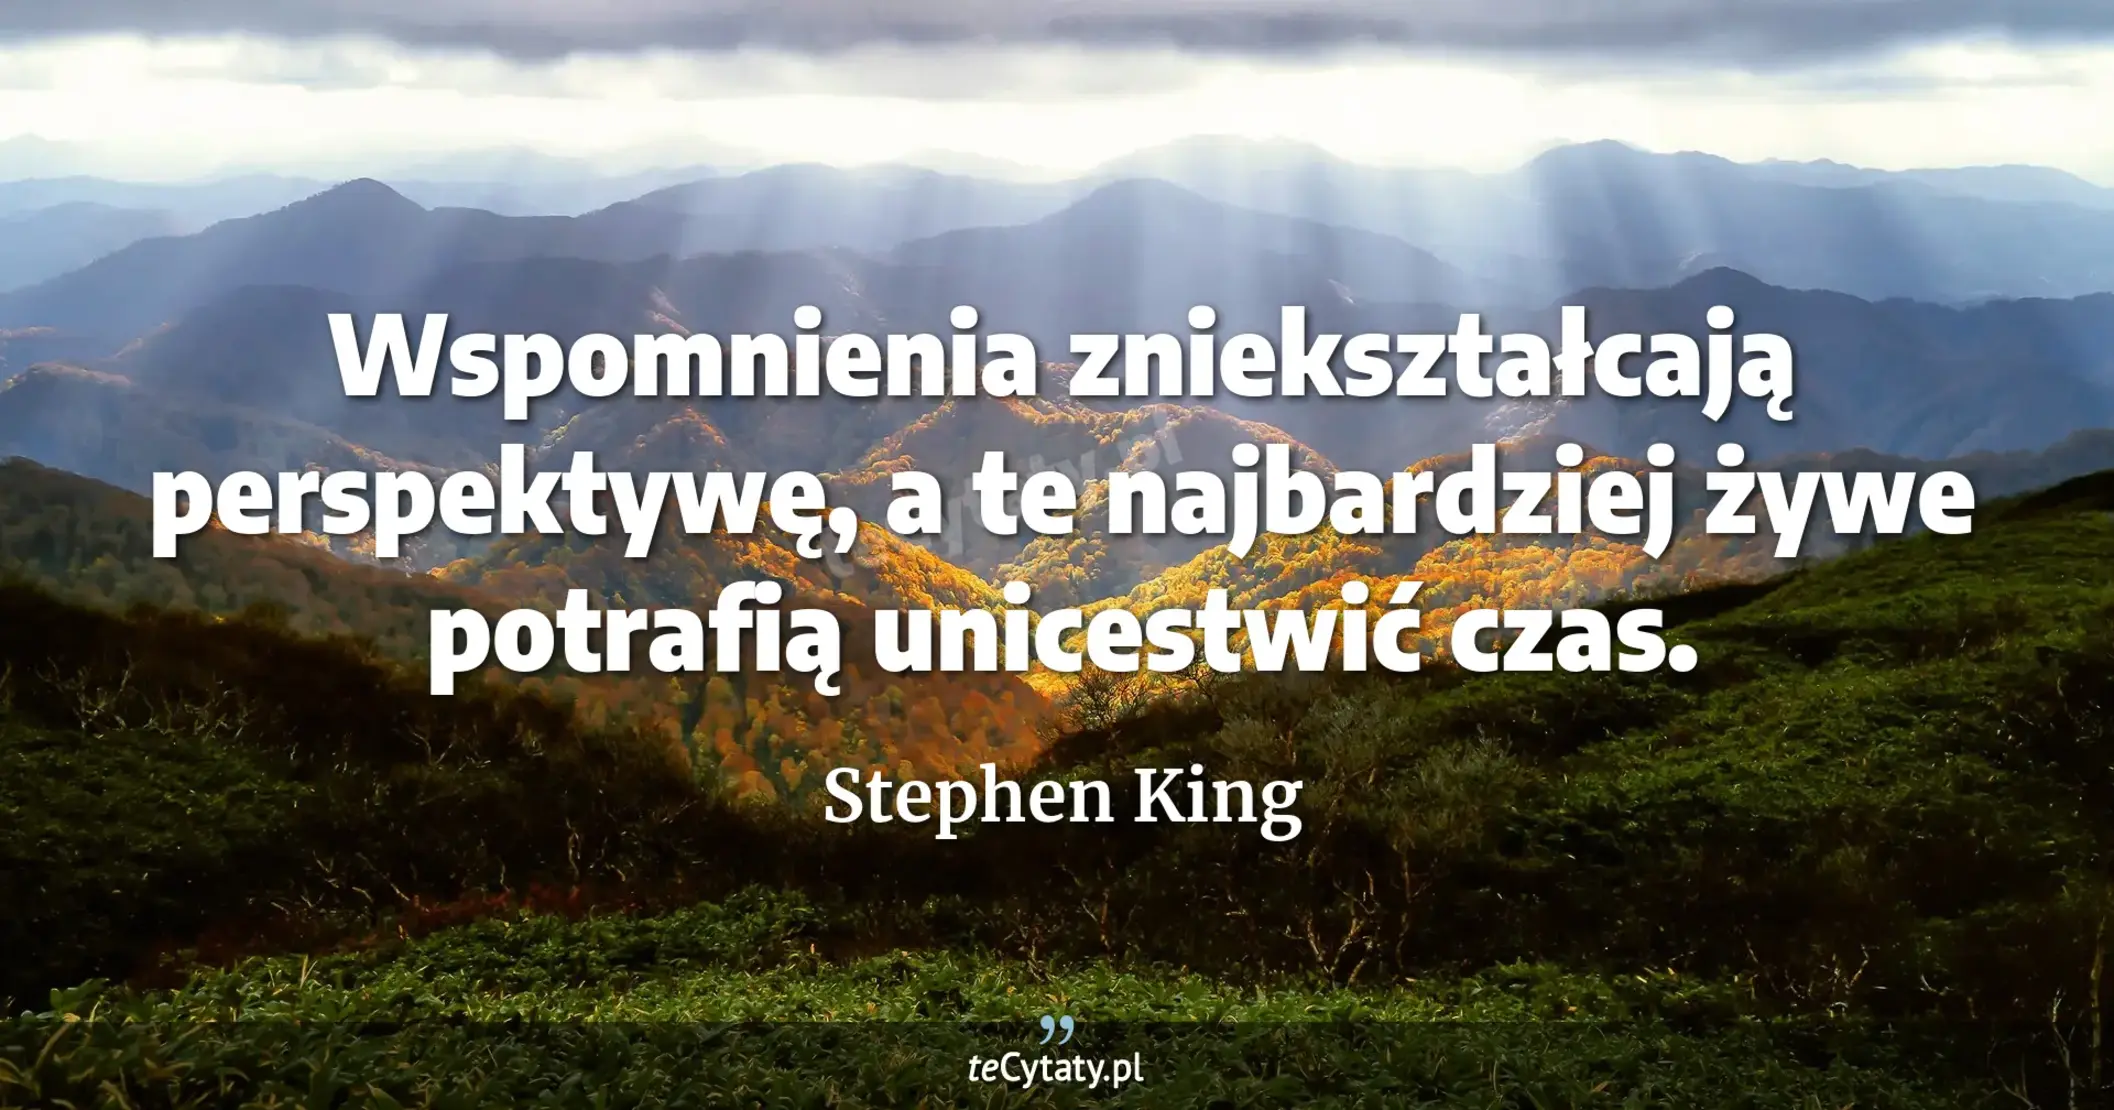 Wspomnienia zniekształcają perspektywę, a te najbardziej żywe potrafią unicestwić czas. - Stephen King